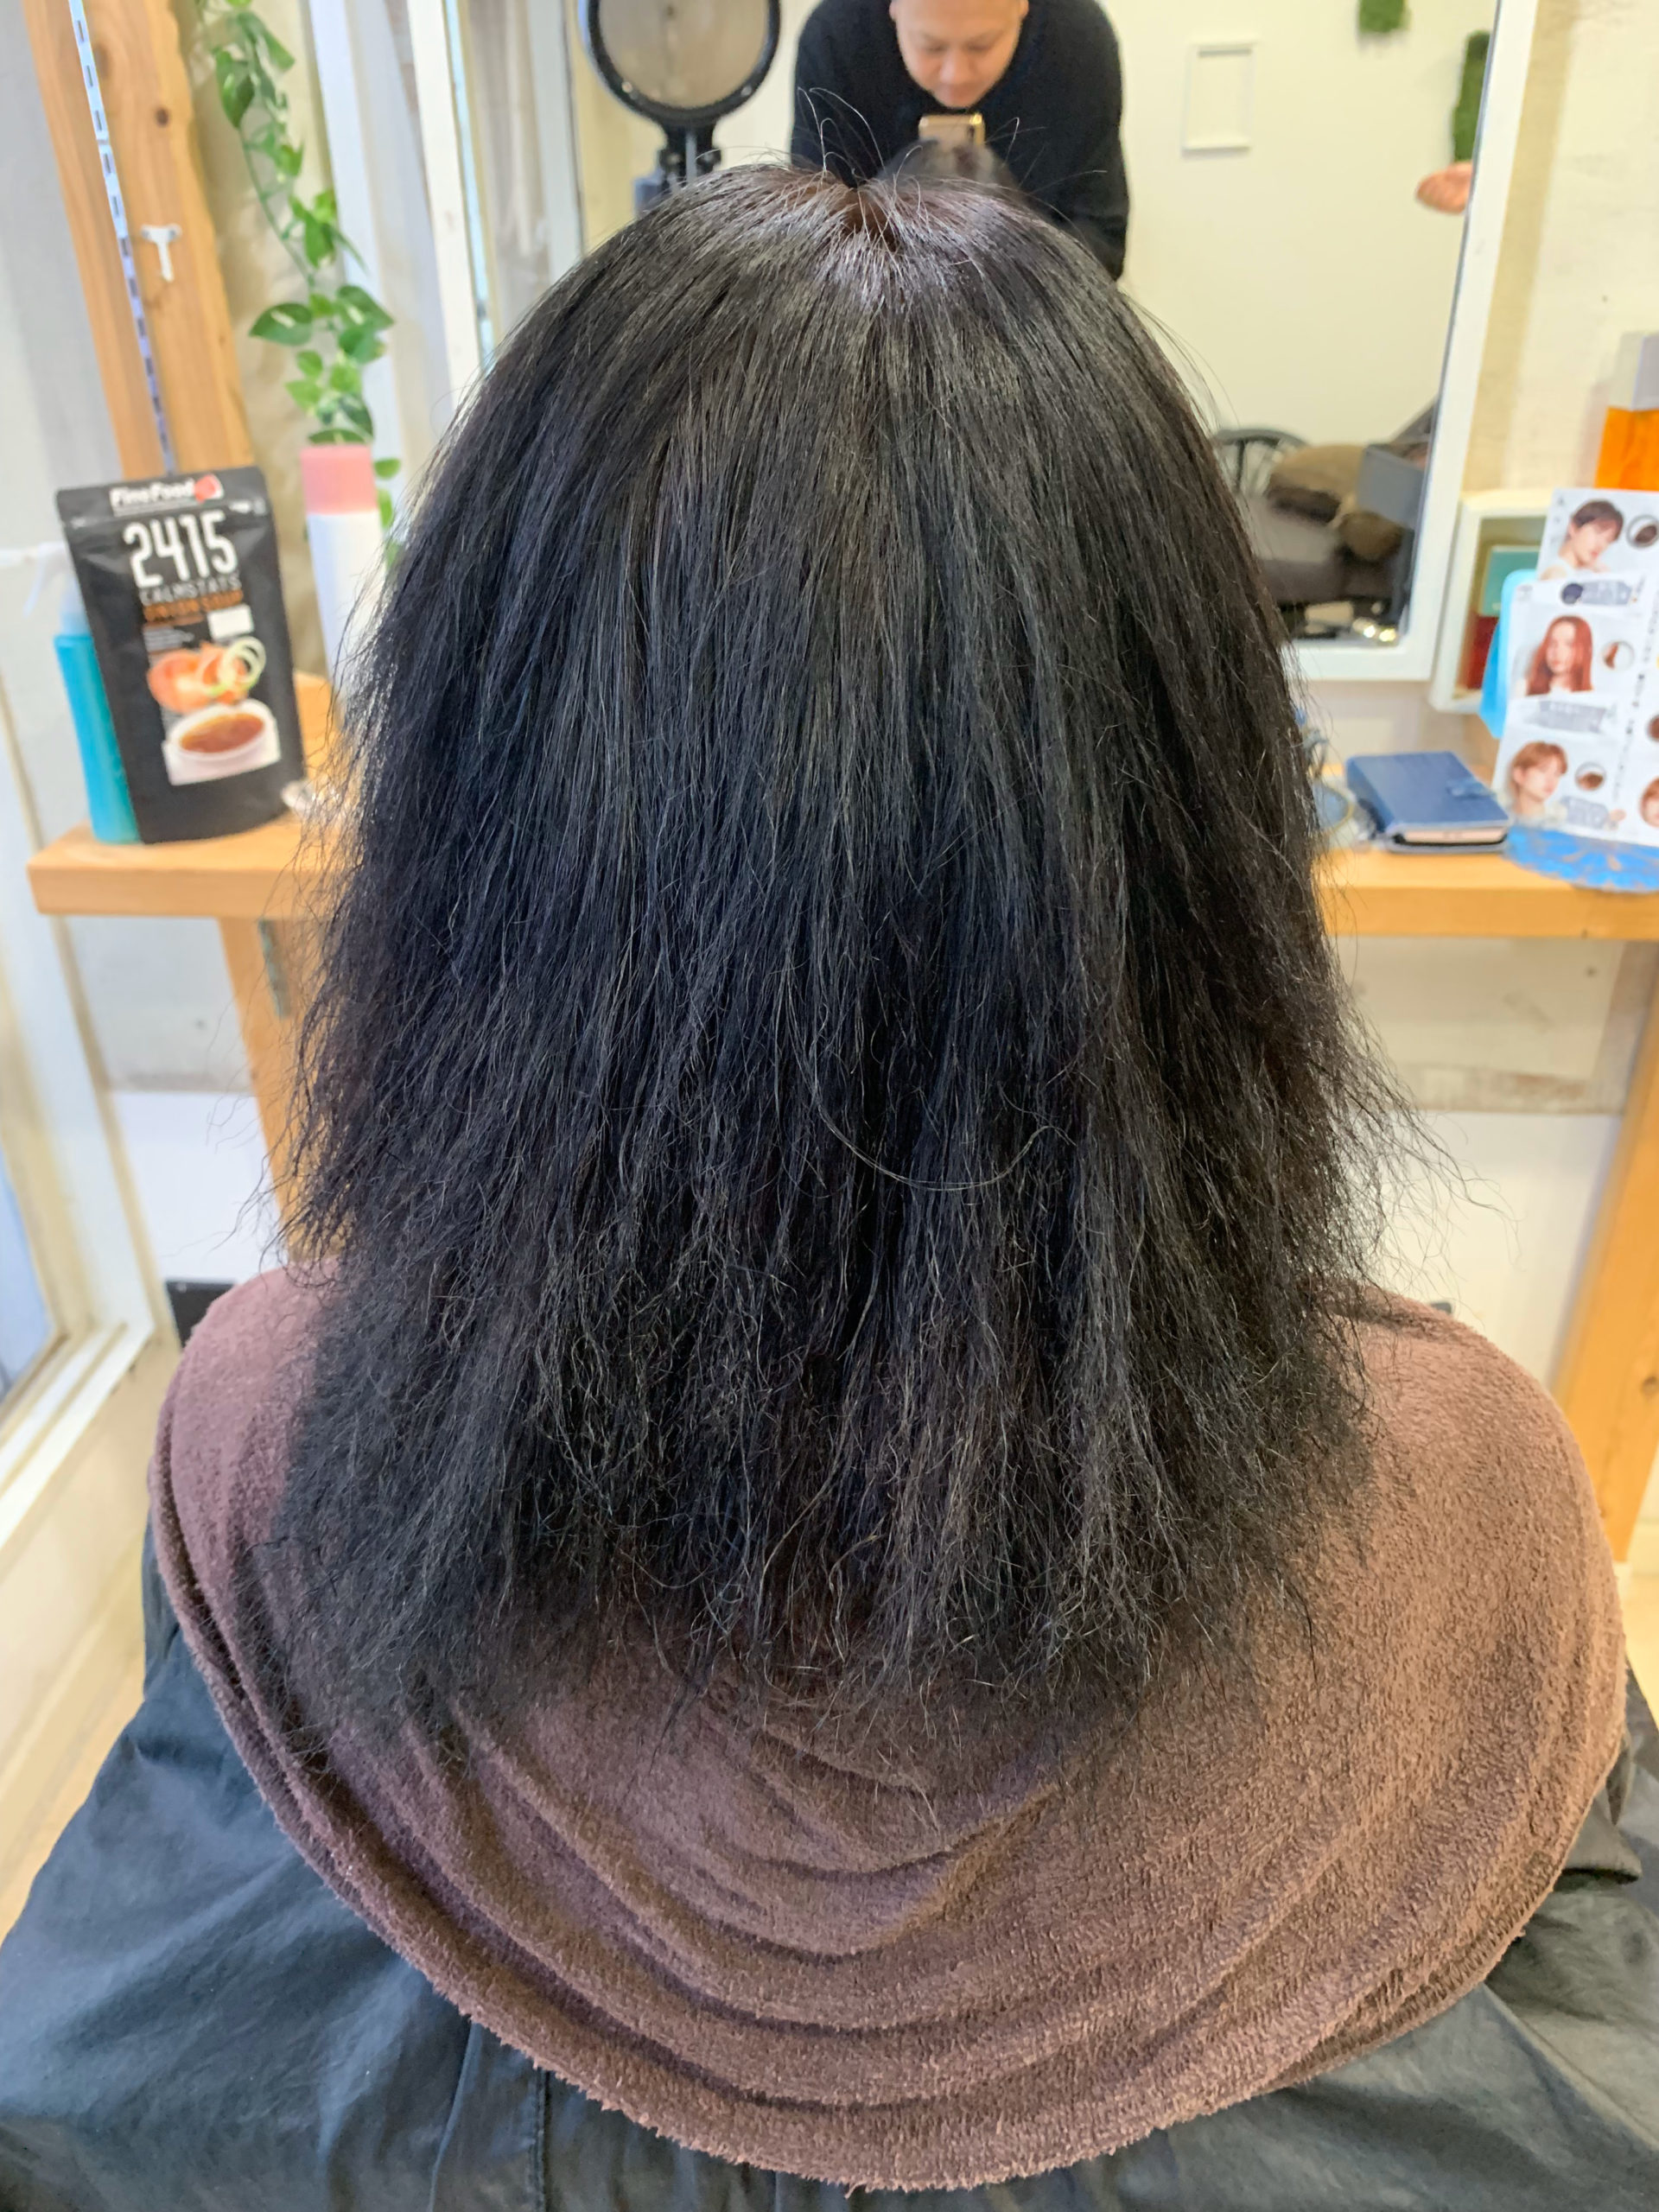 縮毛矯正で髪がチリチリに。。【ビビリ矯正】で直します。原宿・表参道『髪のお悩みを解決するヘアケア美容師の挑戦』